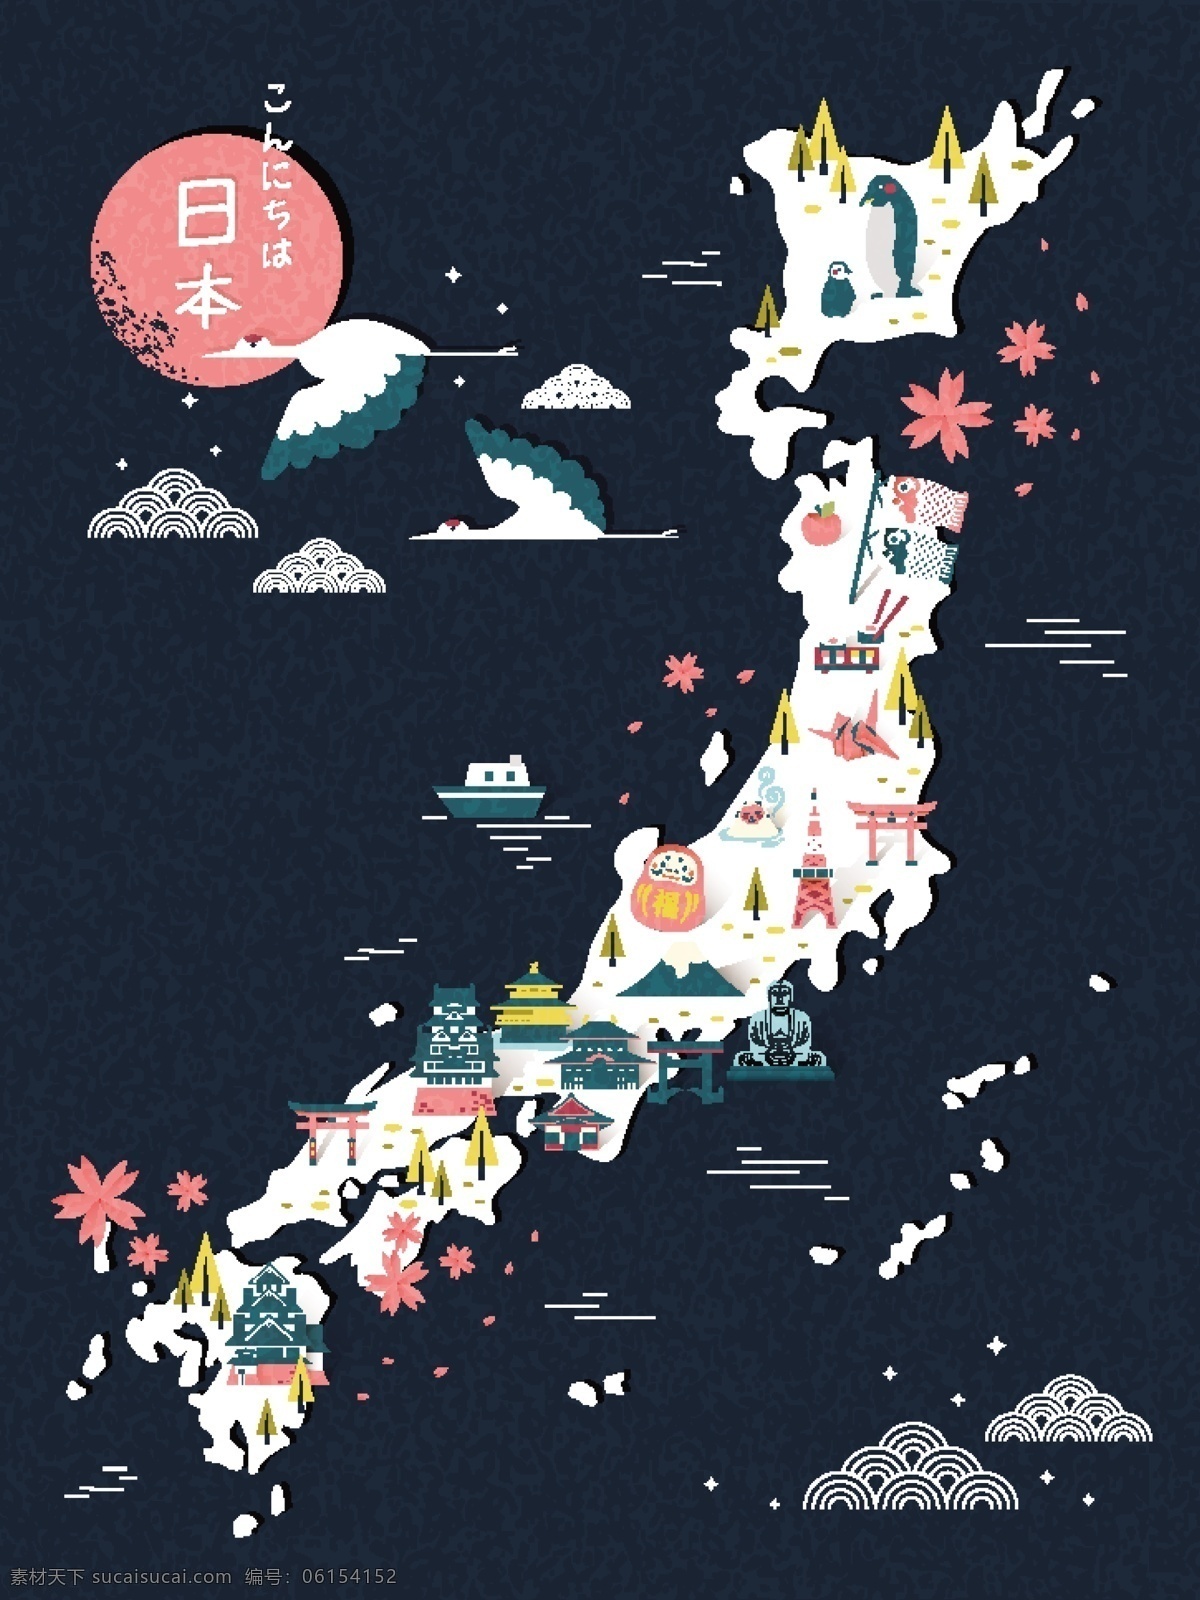 日本 度假旅游 创意 矢量 日本度假 旅游 矢量素材 传统 文化 艺术 扁平化 时尚 卡通 插画 绘画 彩色 生活百科